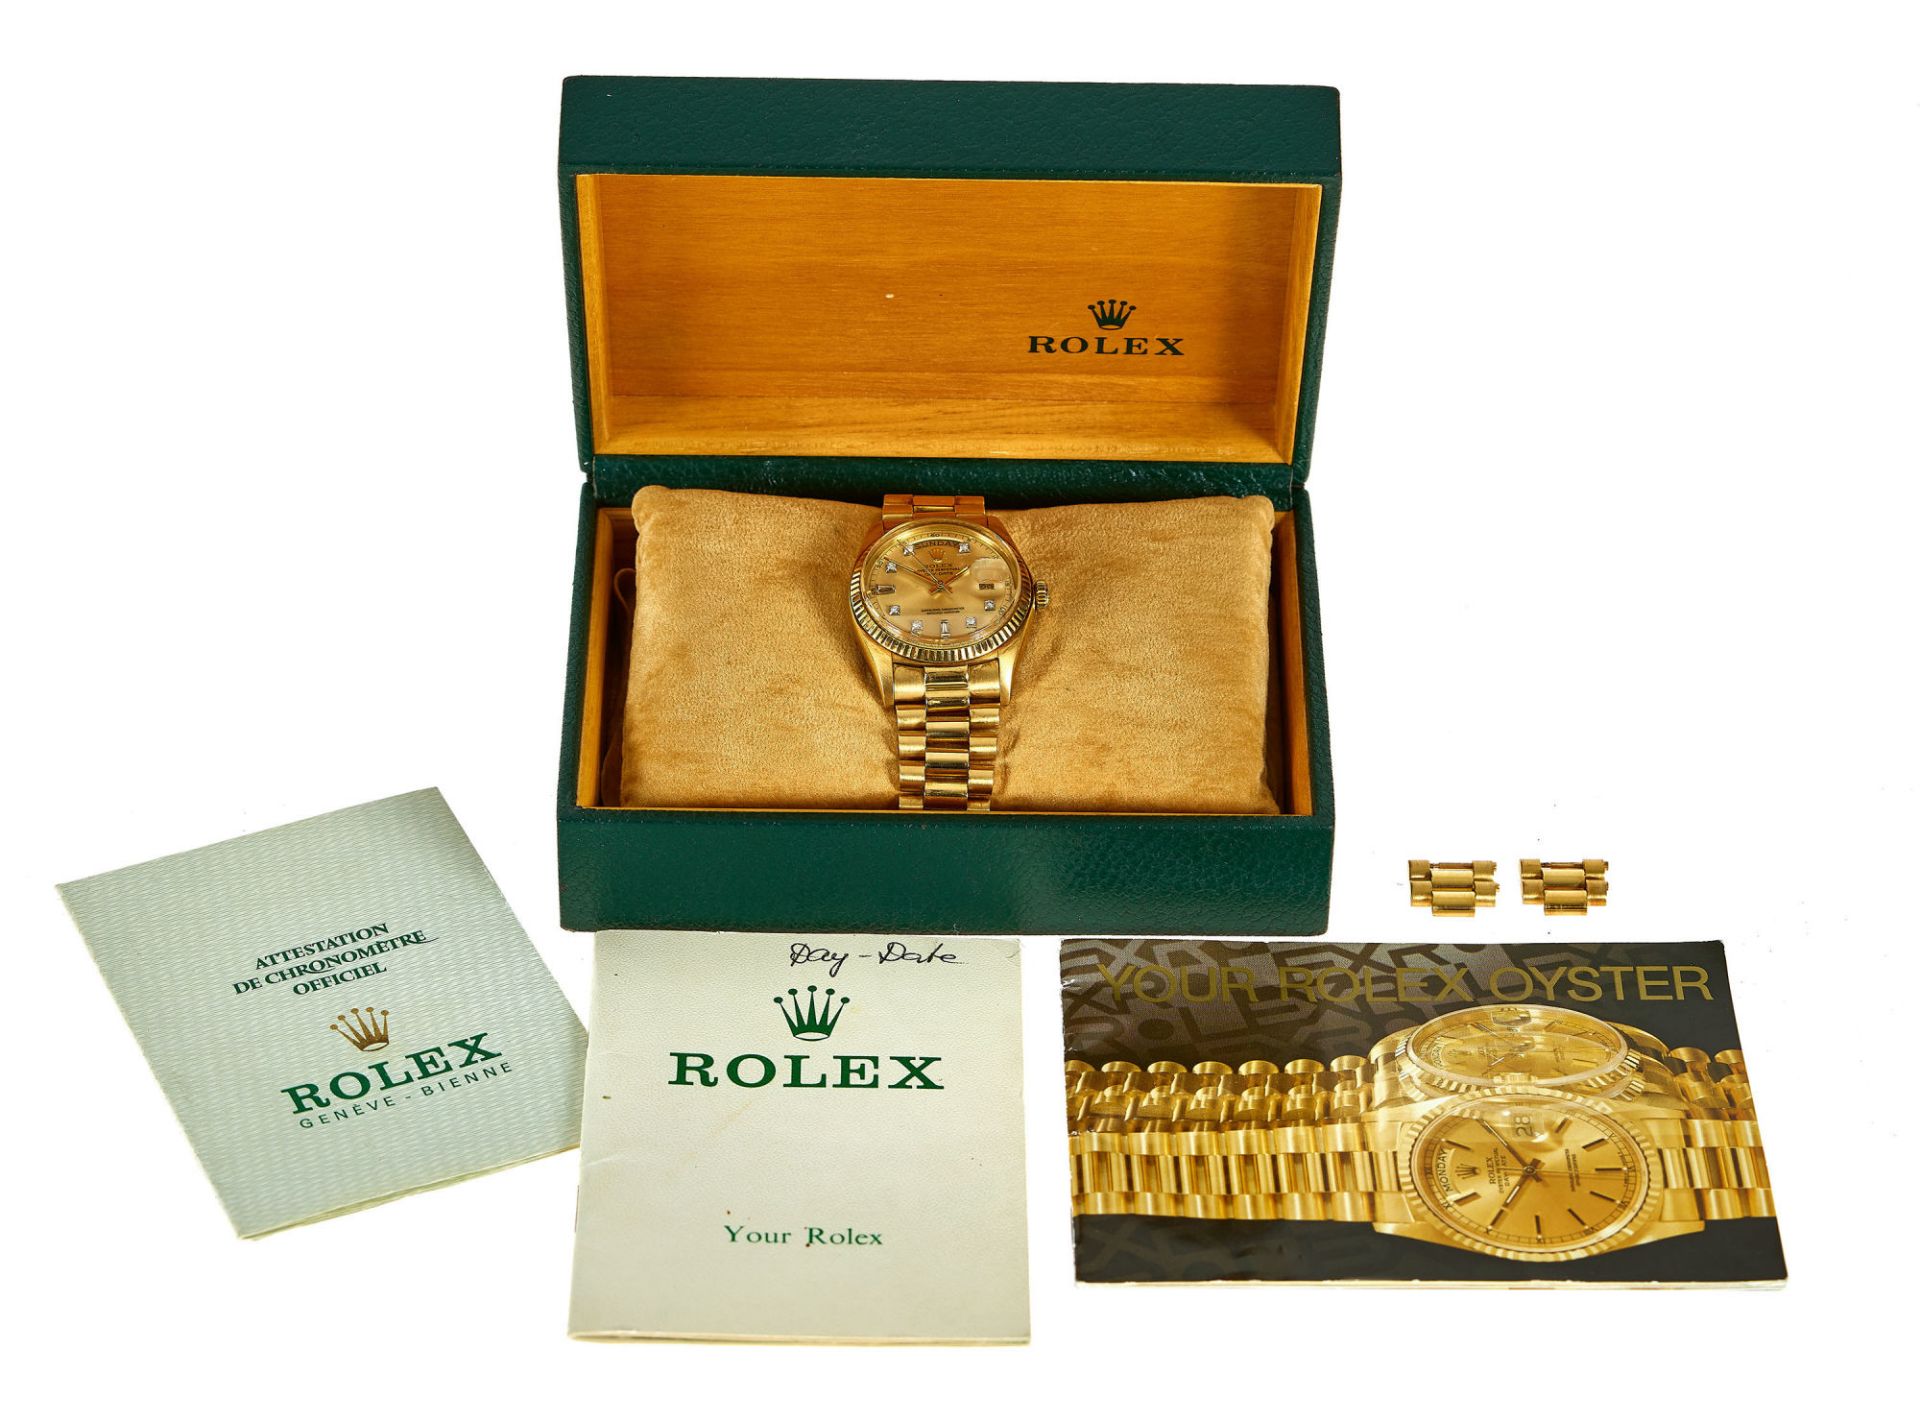 ROLEX: Herrenarmbanduhr "Oyster Perpetual Day-Date". / Rolex, Gentleman's wristwatch Oyster  ... - Bild 2 aus 2